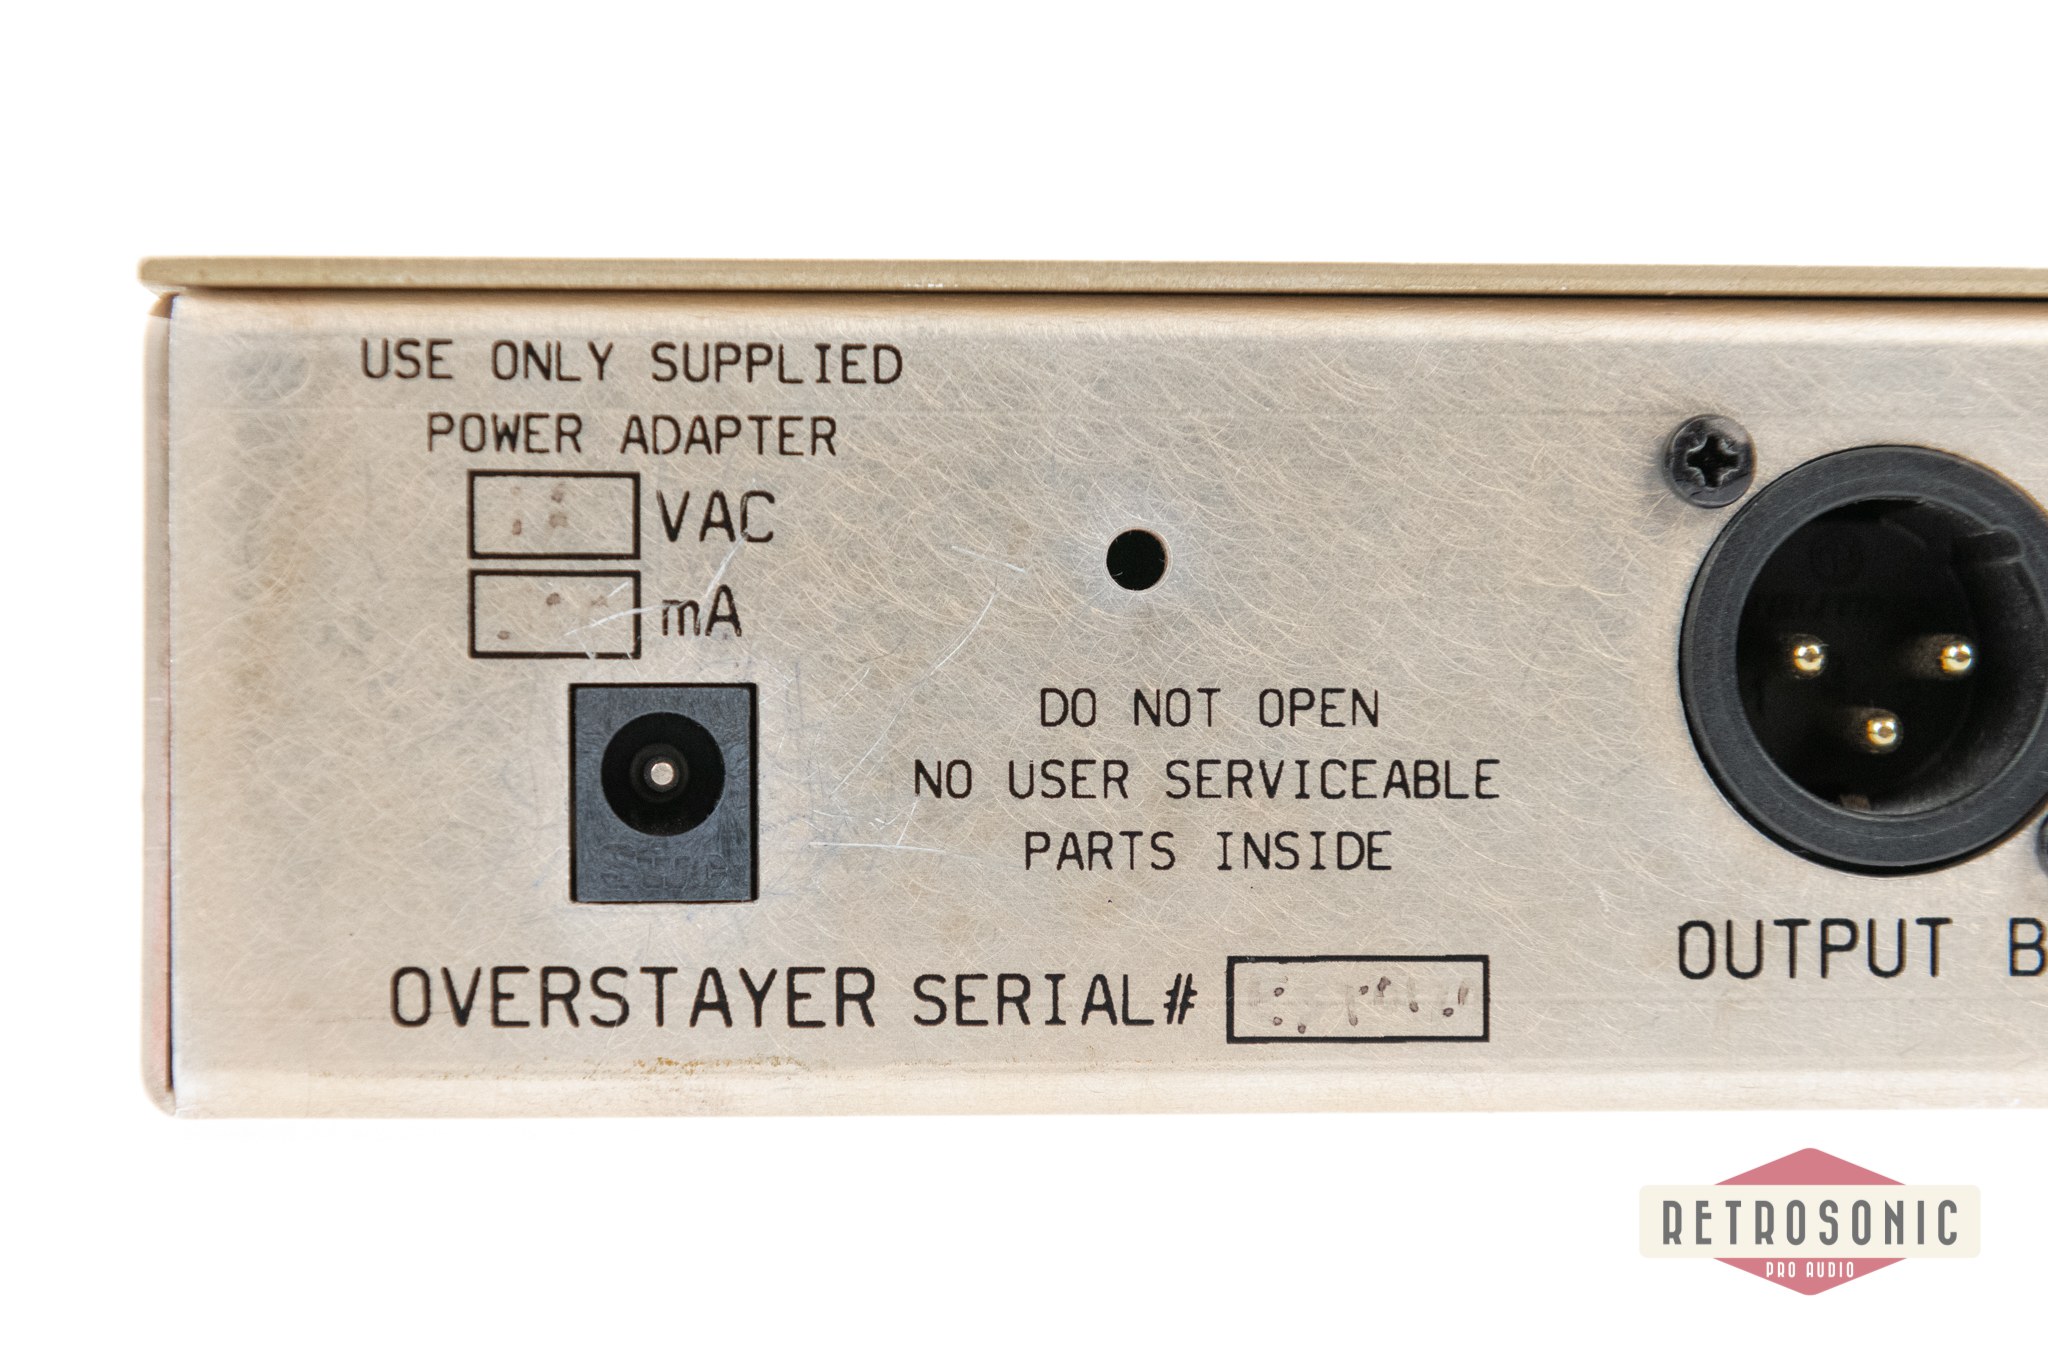 Overstayer Stereo FET Compressor